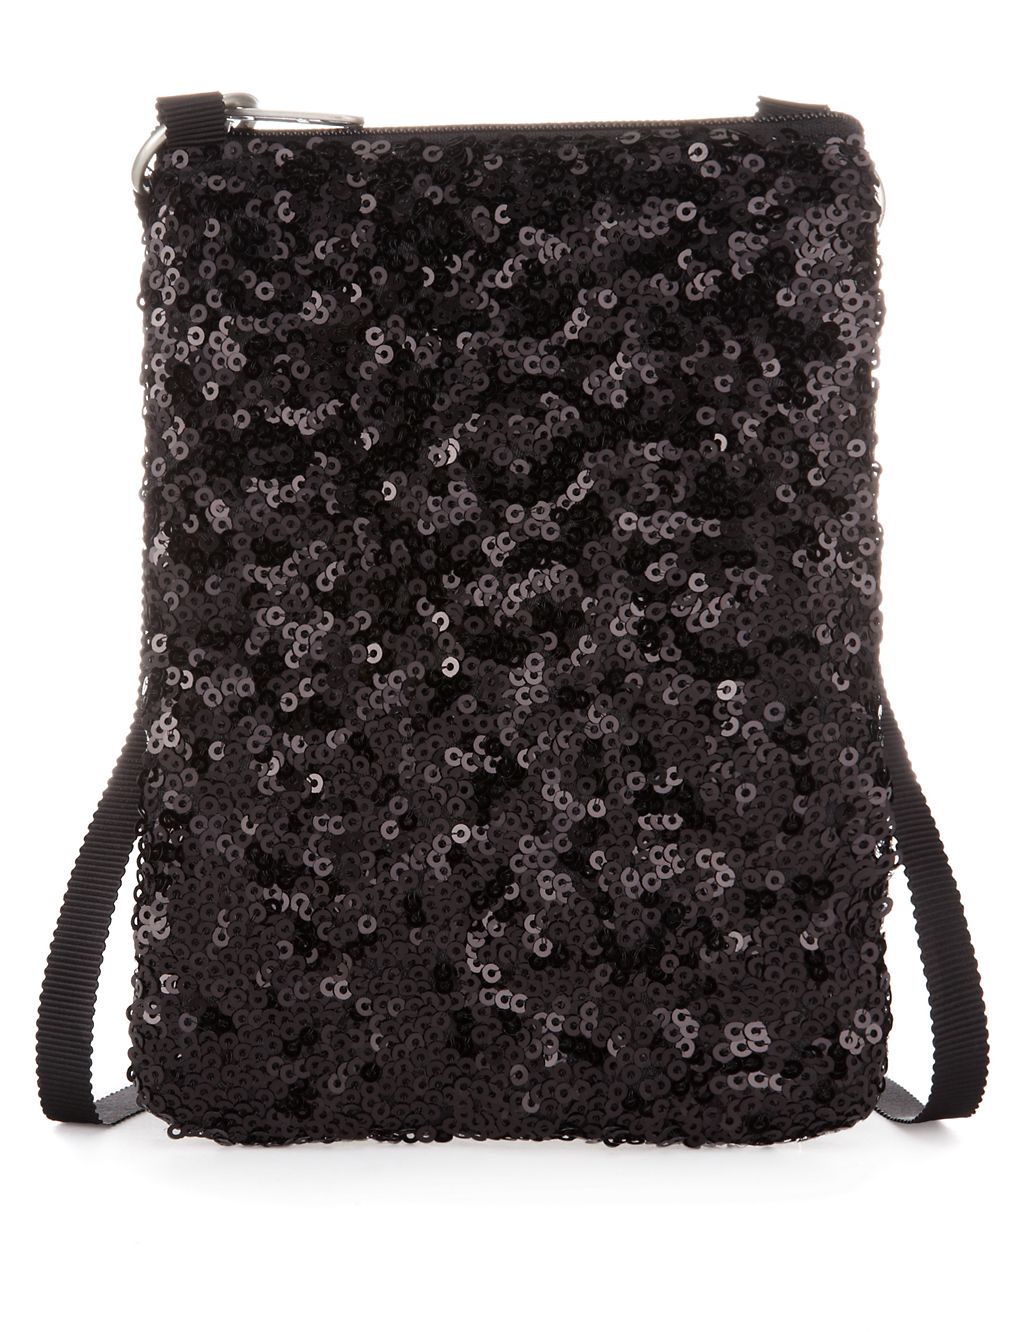 Sequin Embellished Phone Bag (Older Girls) 2 of 4